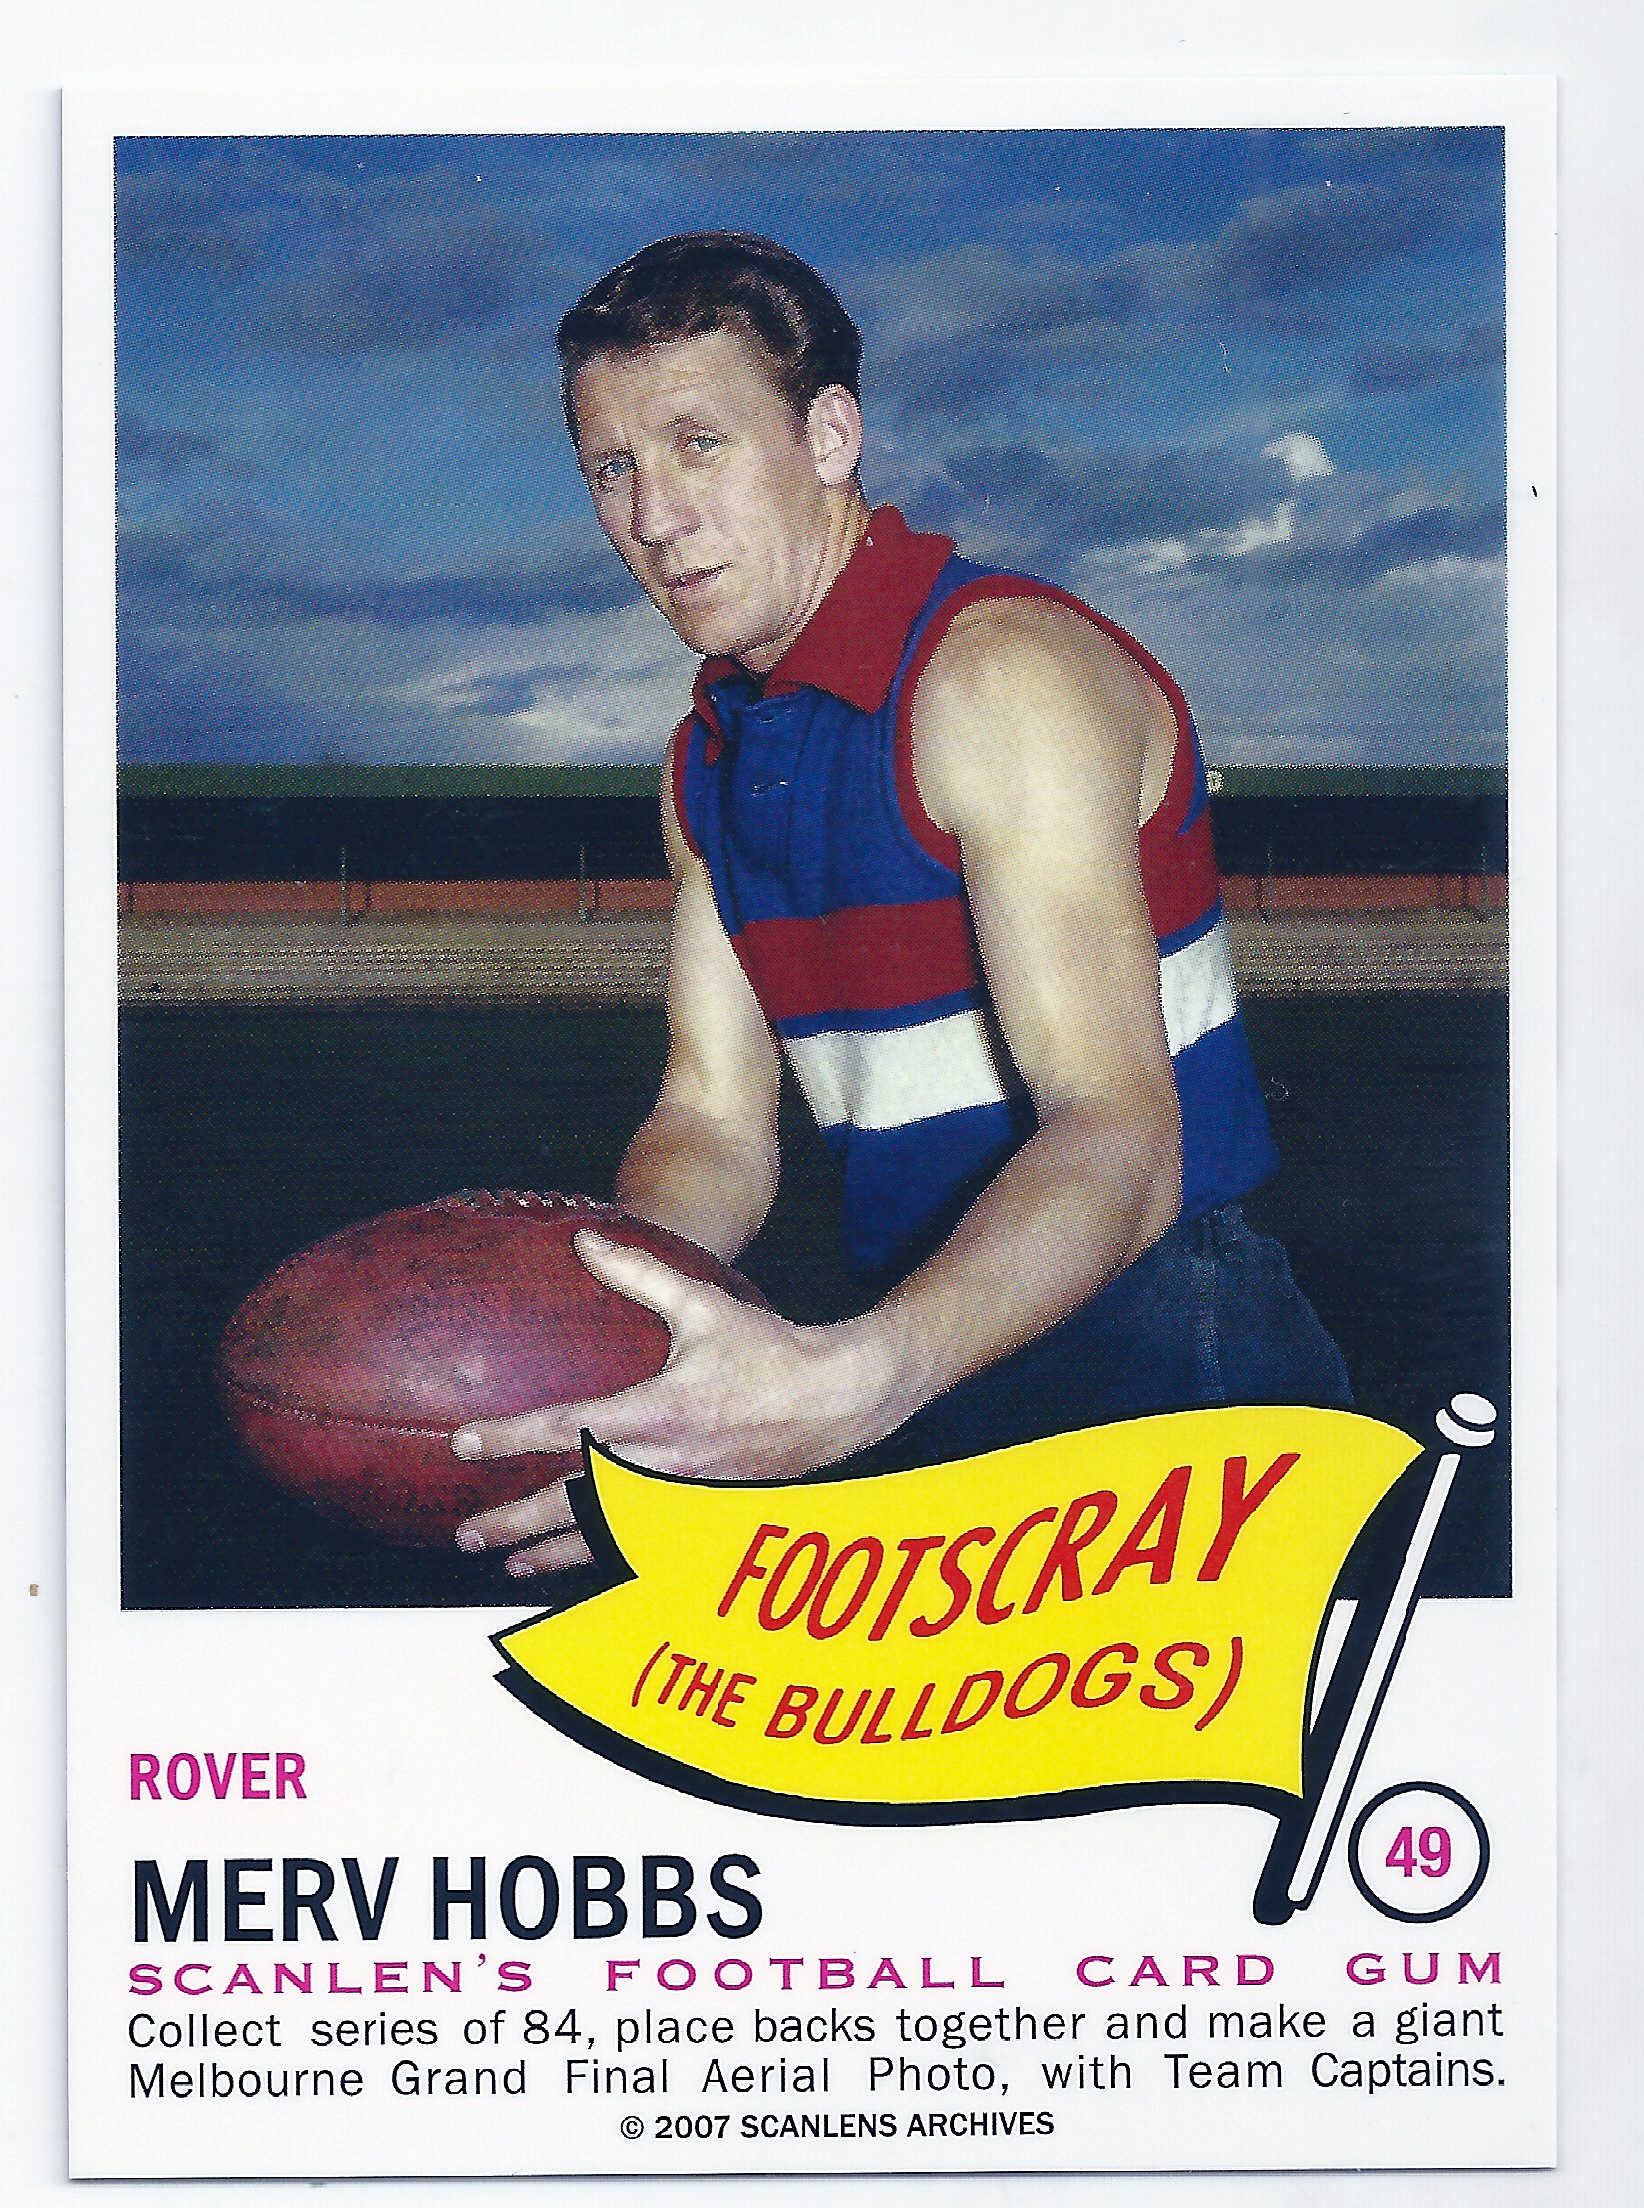 2007 – 1966 Scanlens Flag Archives (49) Merv Hobbs Footscray